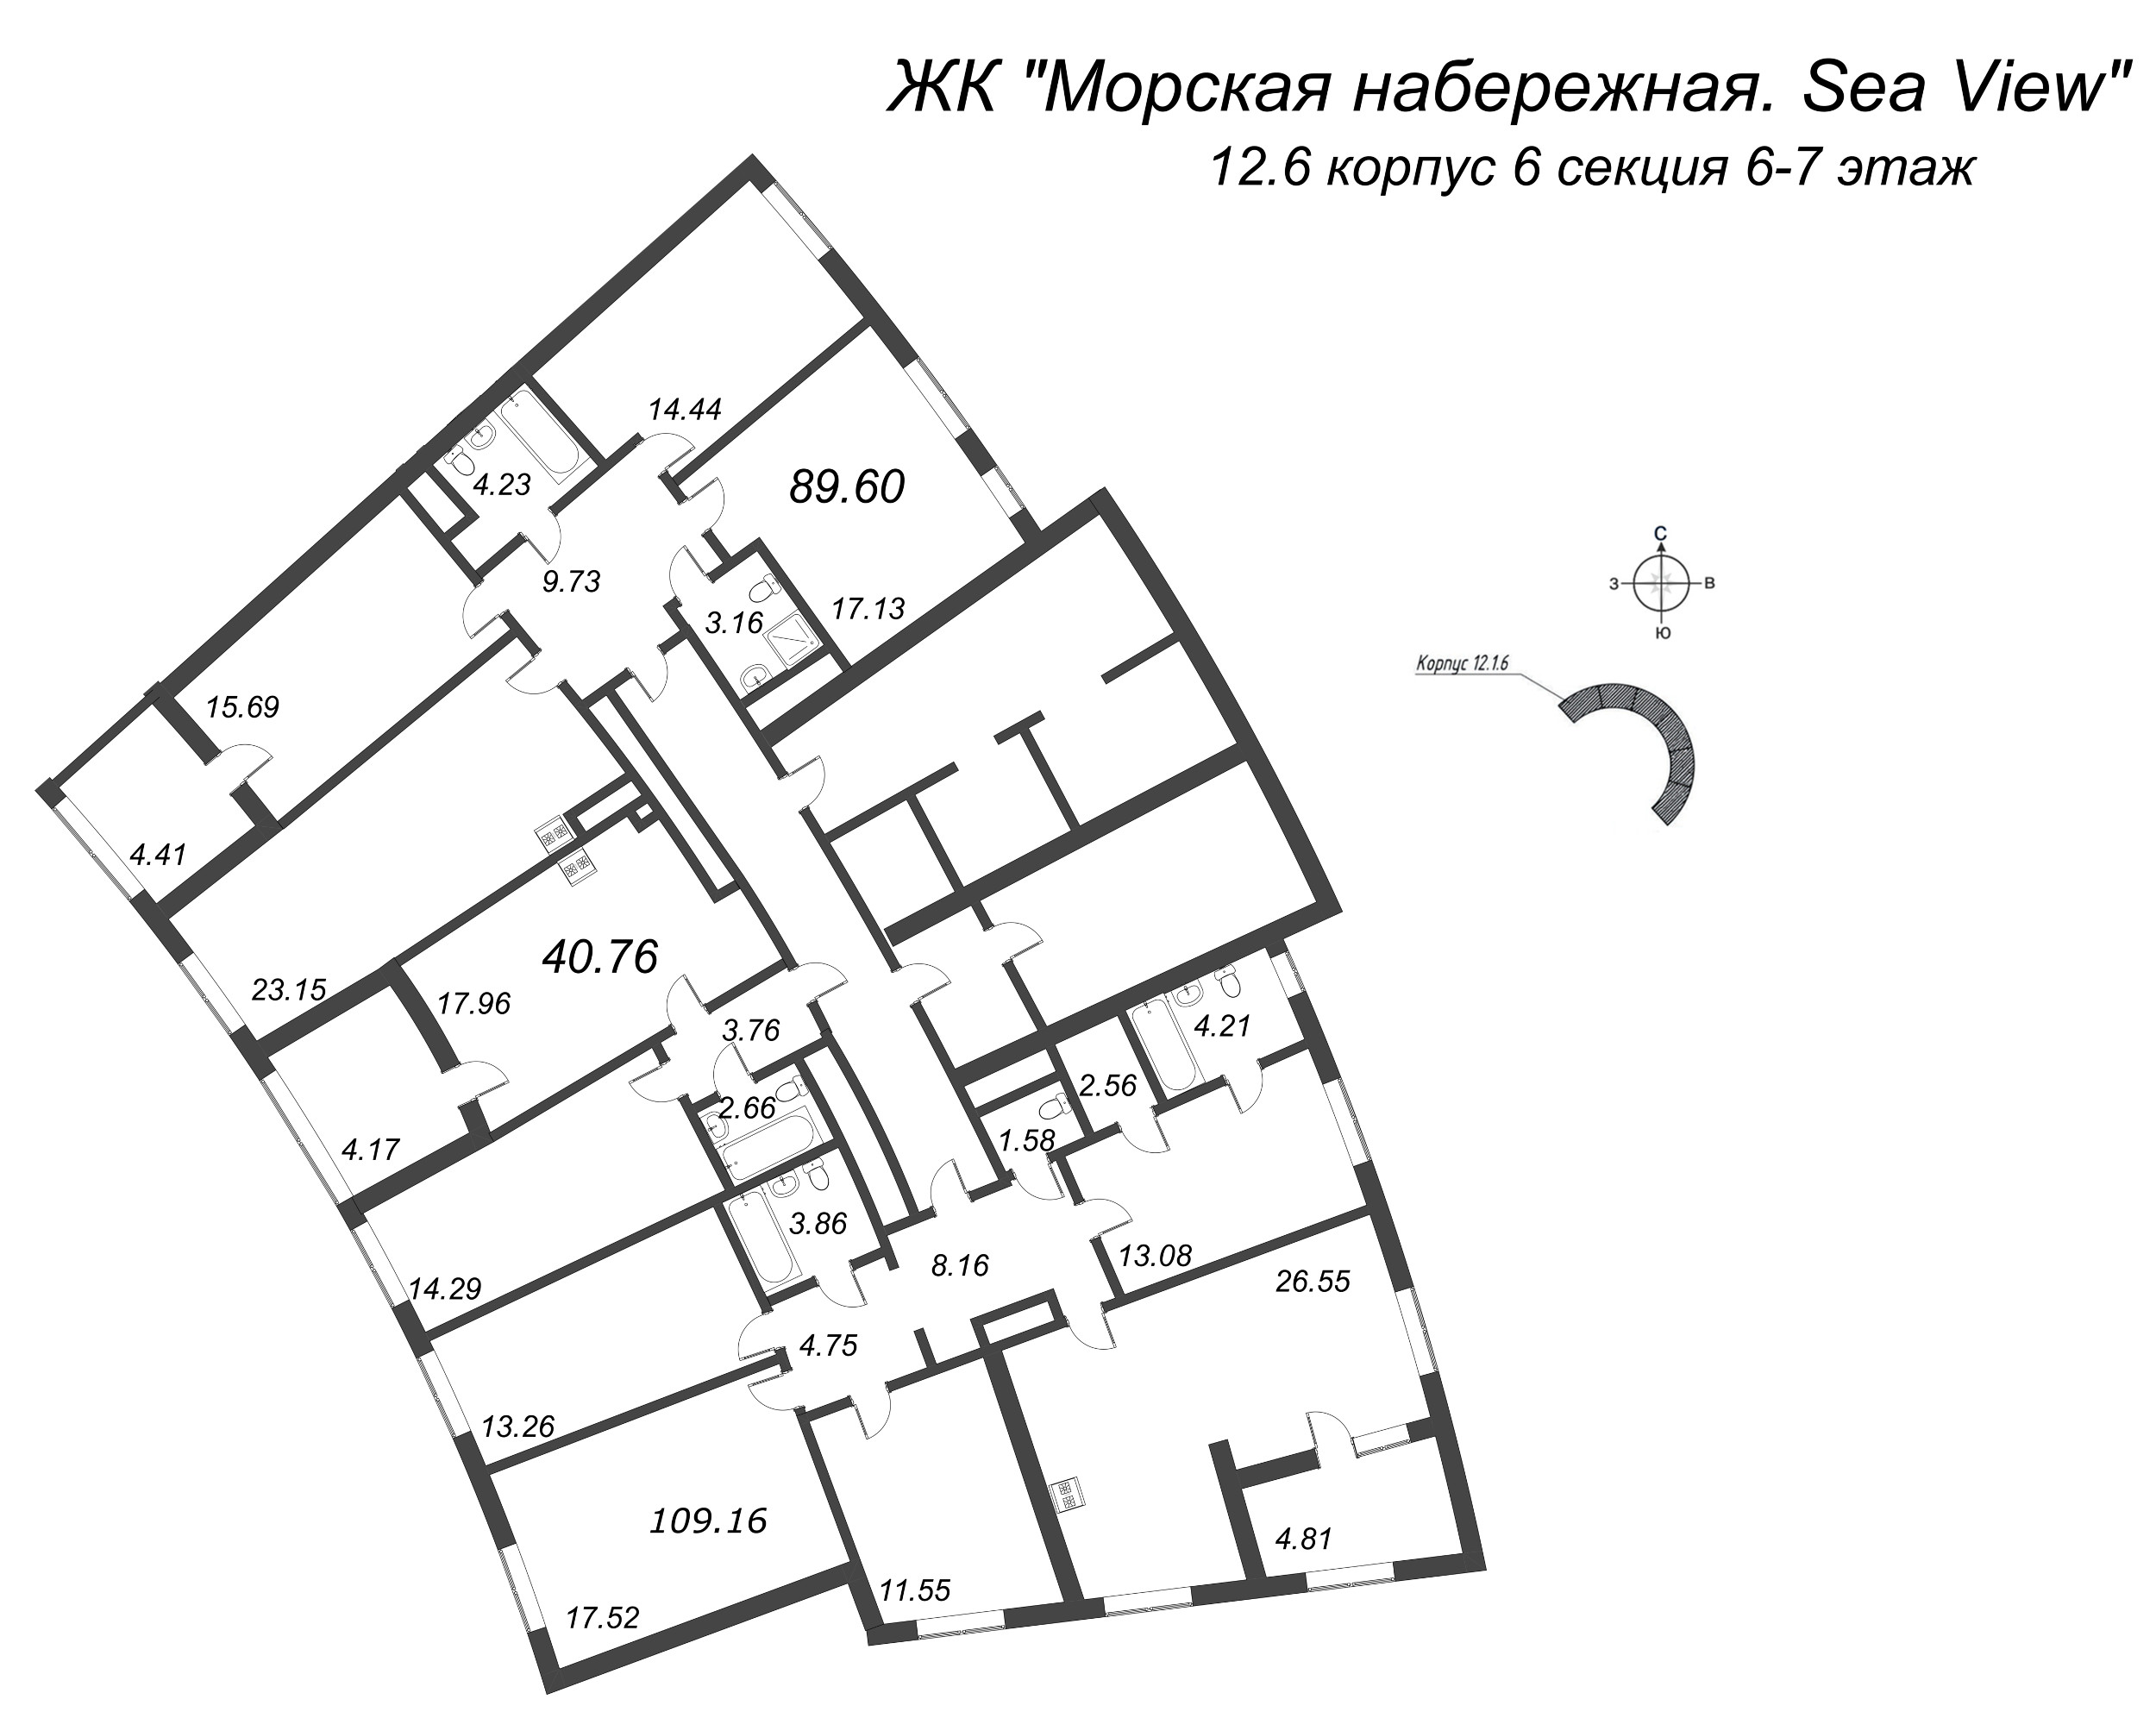 5-комнатная (Евро) квартира, 109.16 м² в ЖК "Морская набережная. SeaView" - планировка этажа